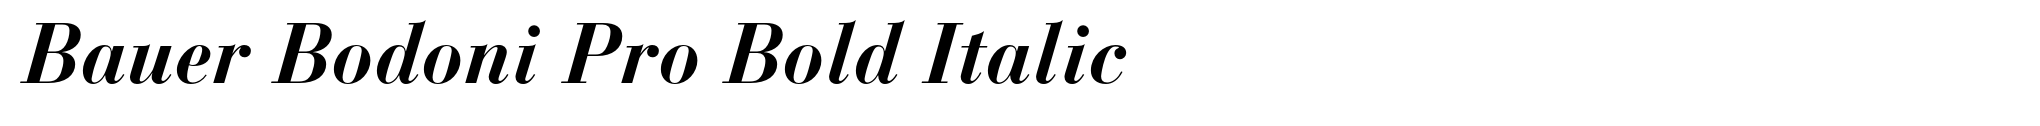 Bauer Bodoni Pro Bold Italic image